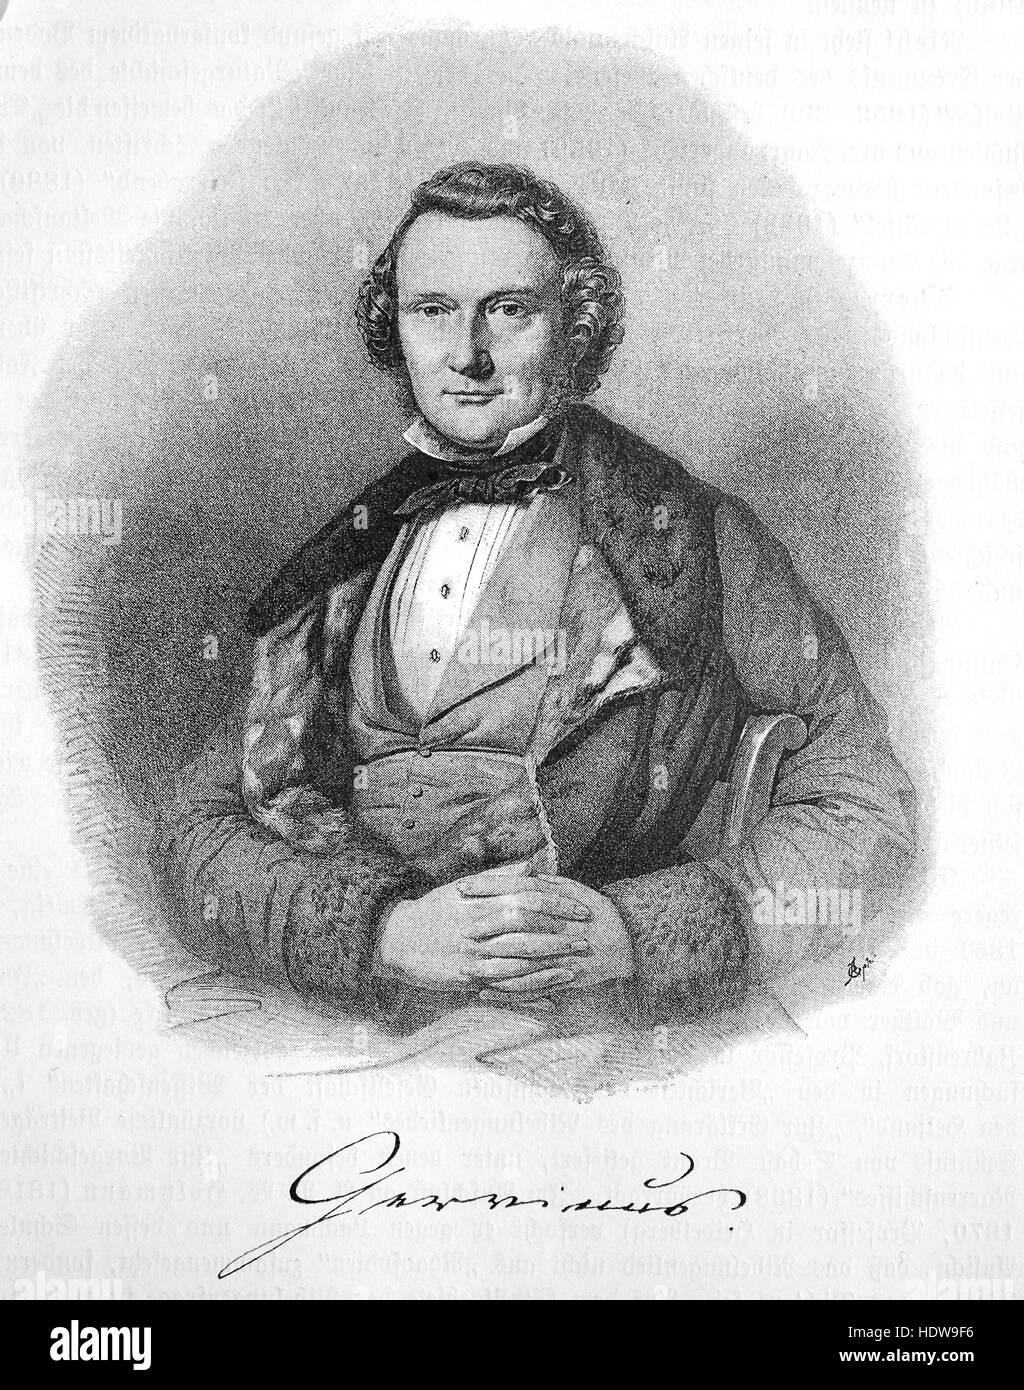 Georg Gottfried Gervinus, 1805-1871, un historien littéraire et politique allemande, gravure sur bois de l'année 1880 Banque D'Images